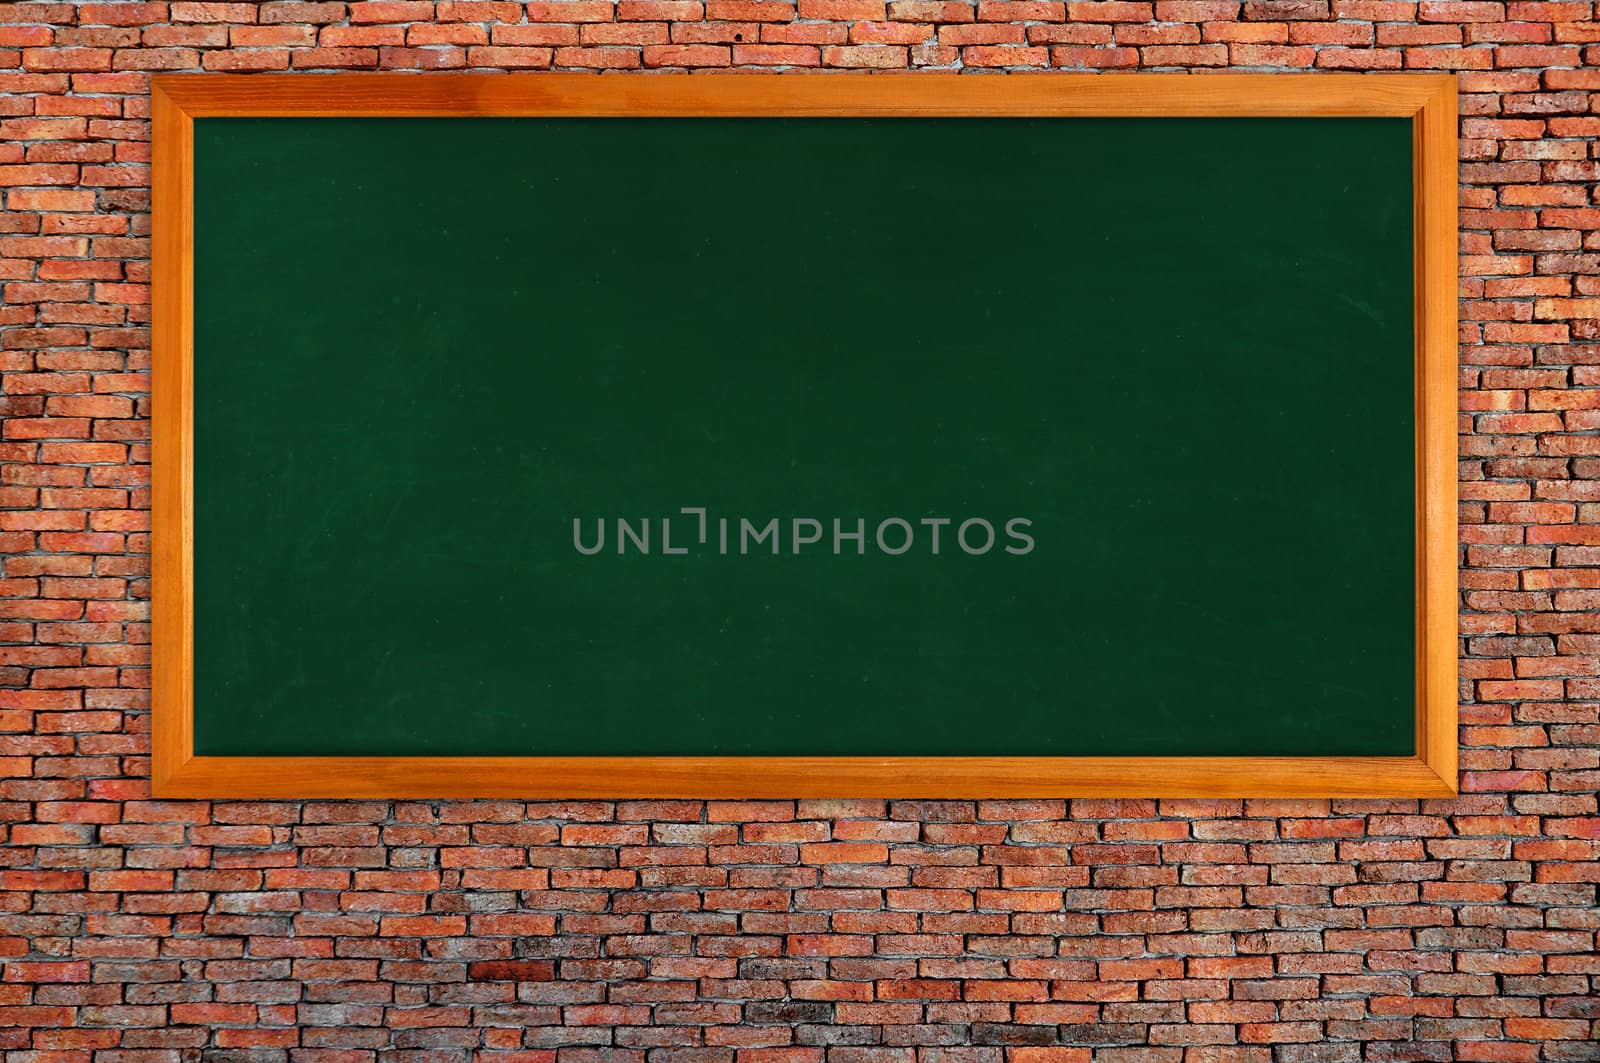 blackboard on brick wall by antpkr